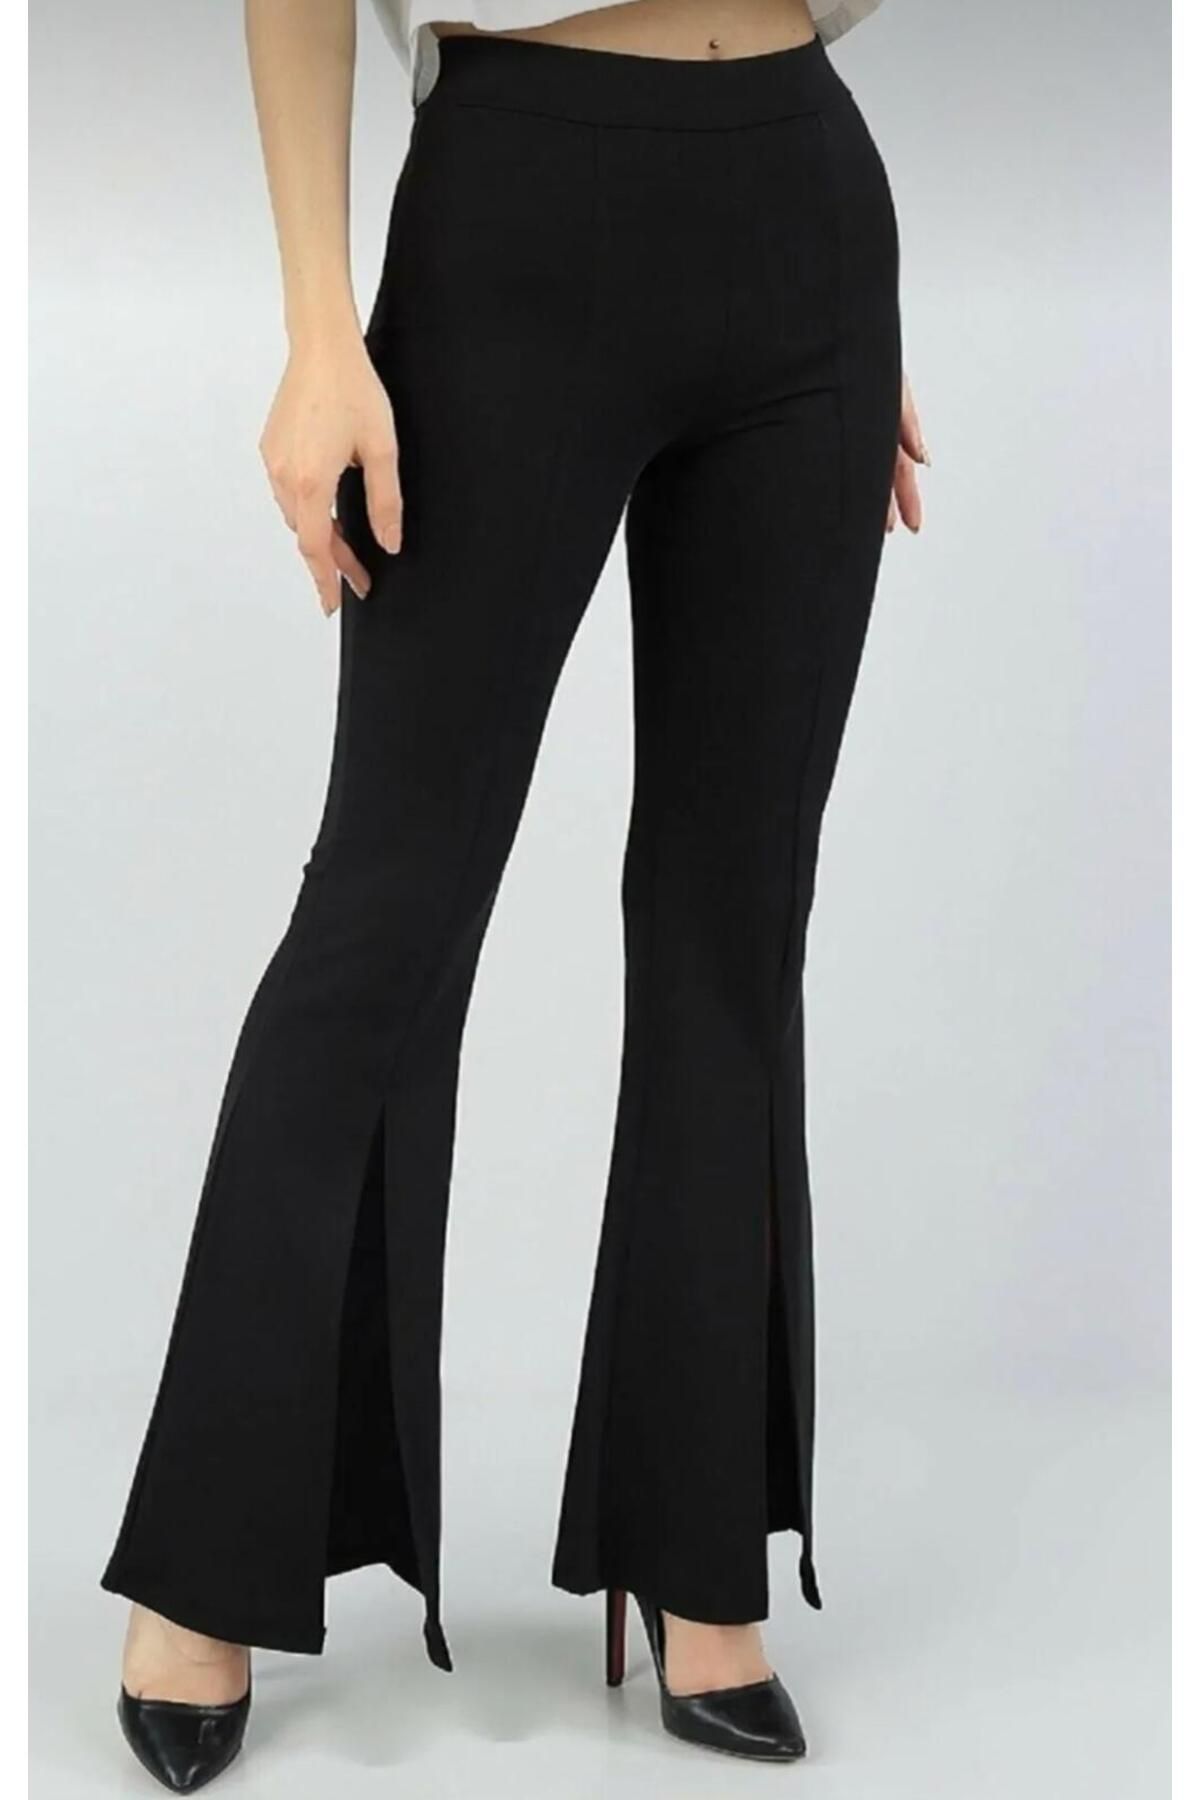 MİRA BUTİK Kadın Yırtmaçlı Çelik İnterlok Kumaş Yüksek Bel Siyah Ispanyol Paça Tayt Pantalon